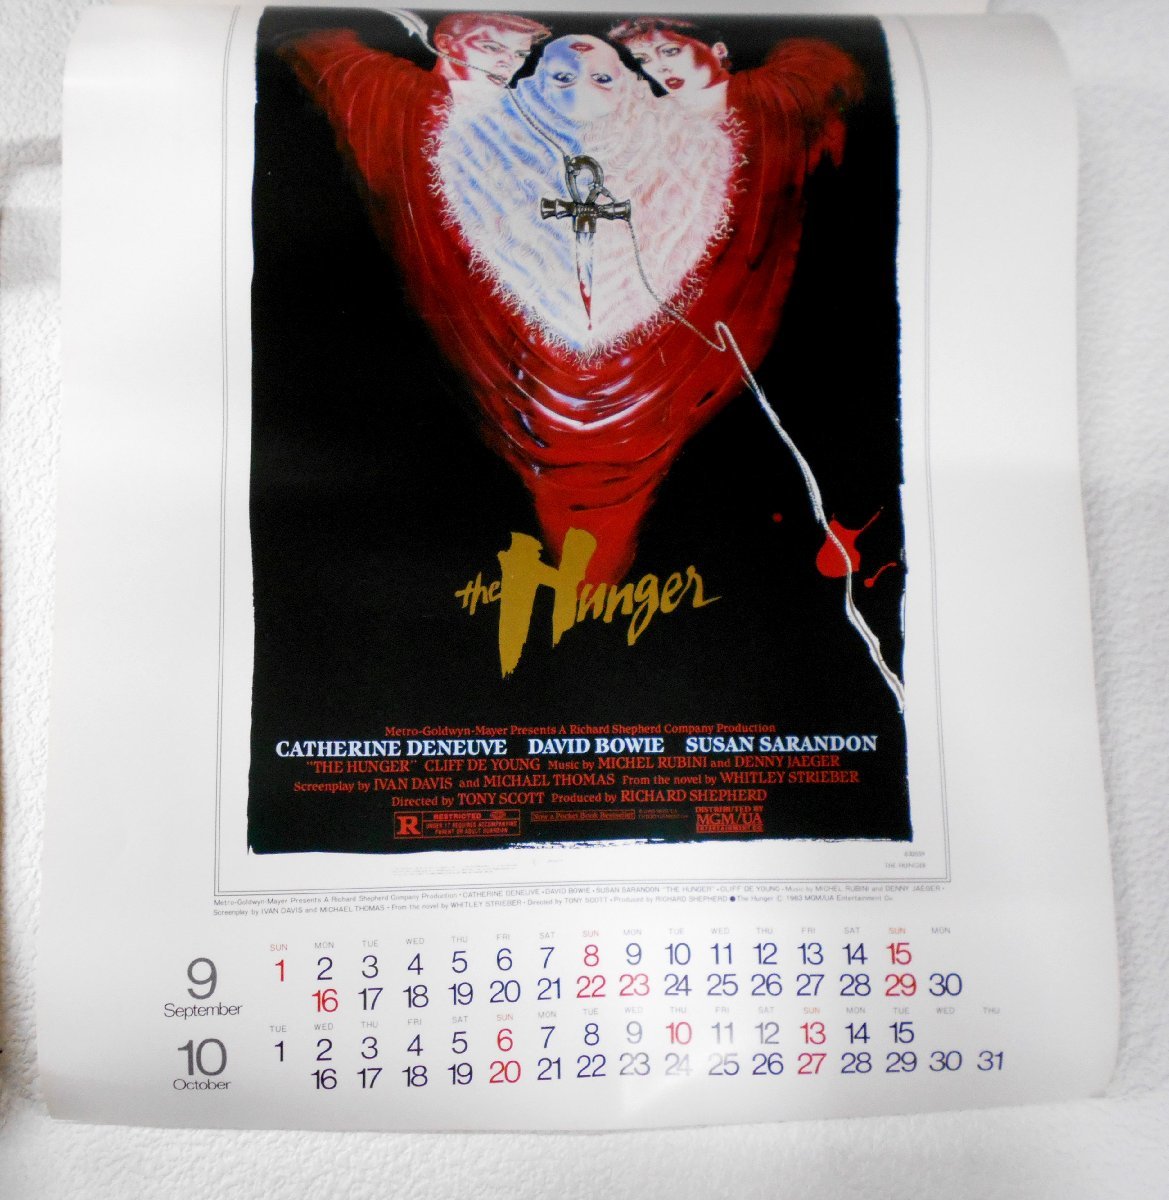 HERALD カレンダー 1986/1987年 映画カレンダー MGM/UA 1985年 まとめ売り 【コ500】の画像5